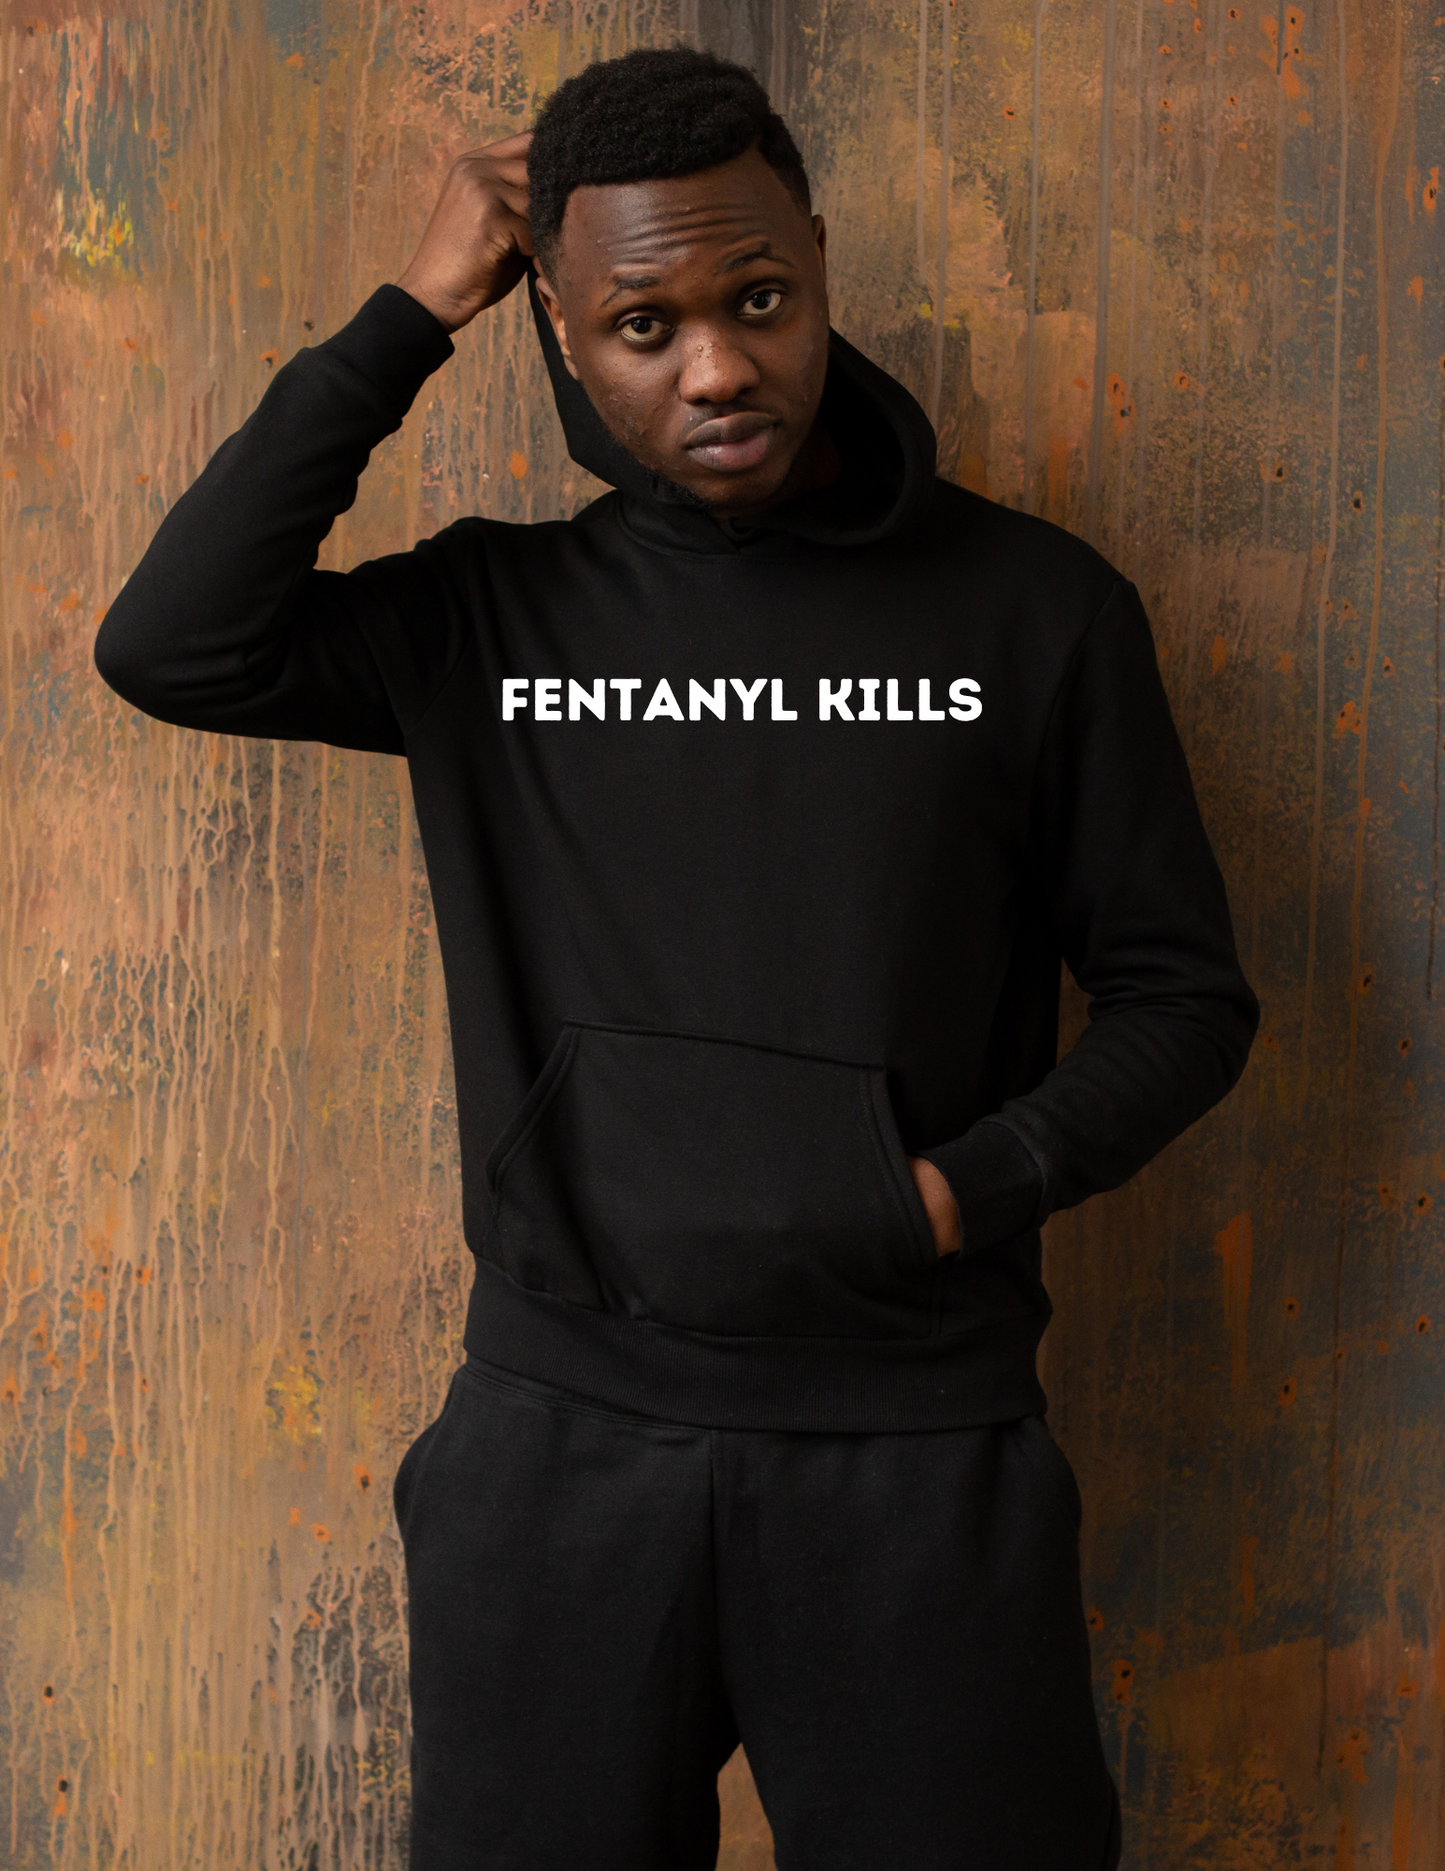 Fentanyl kills hoodie